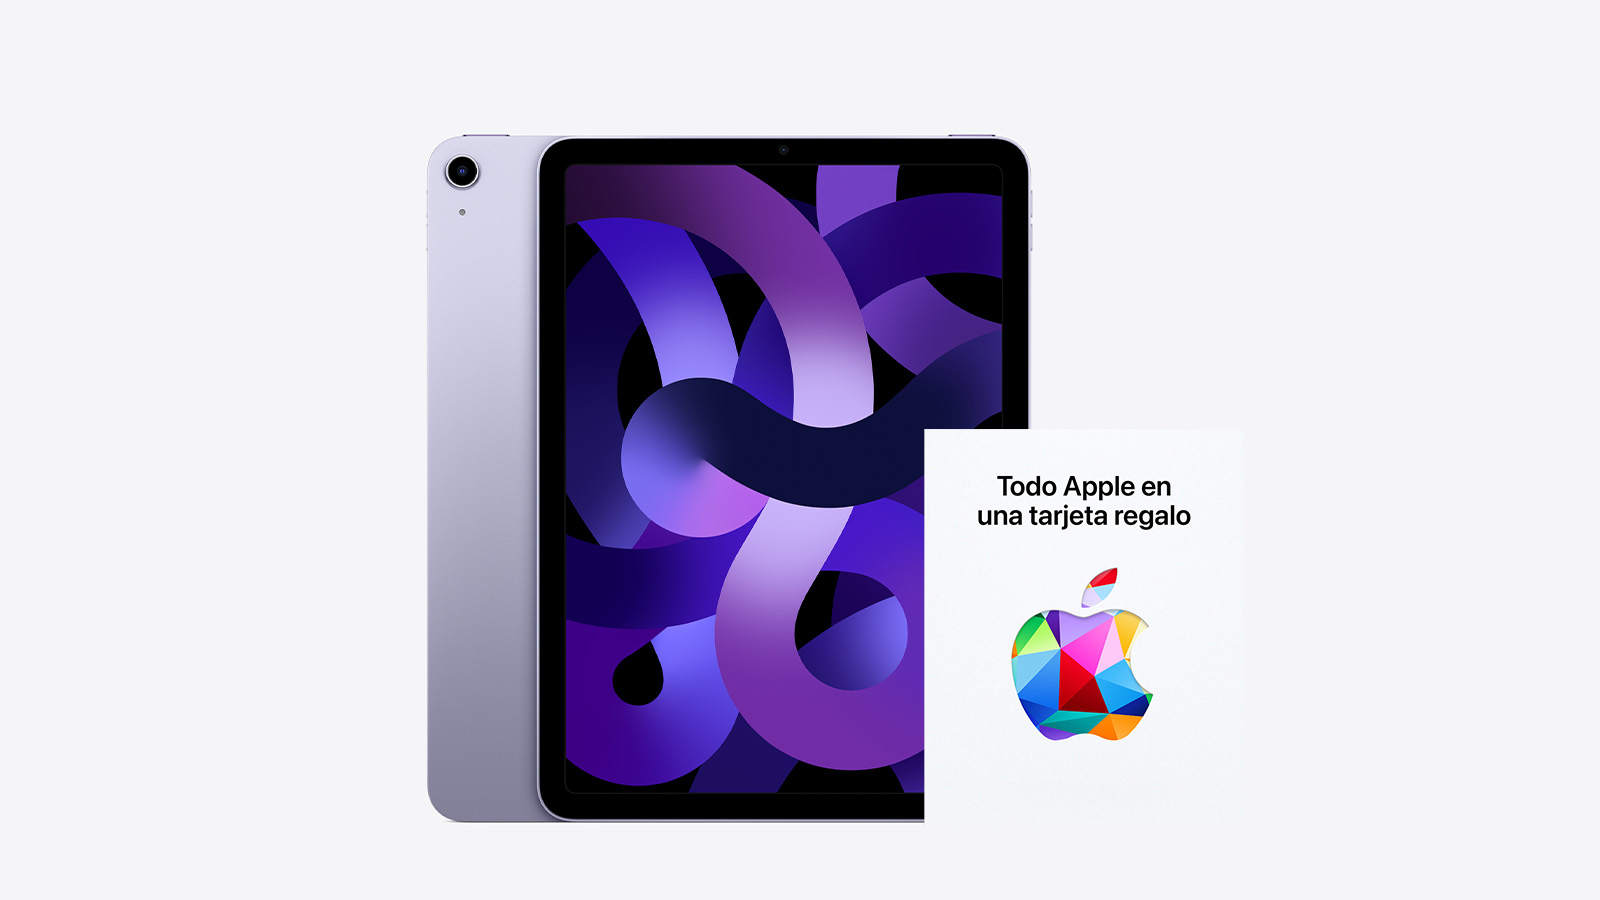 iPad Air + tarjeta regalo